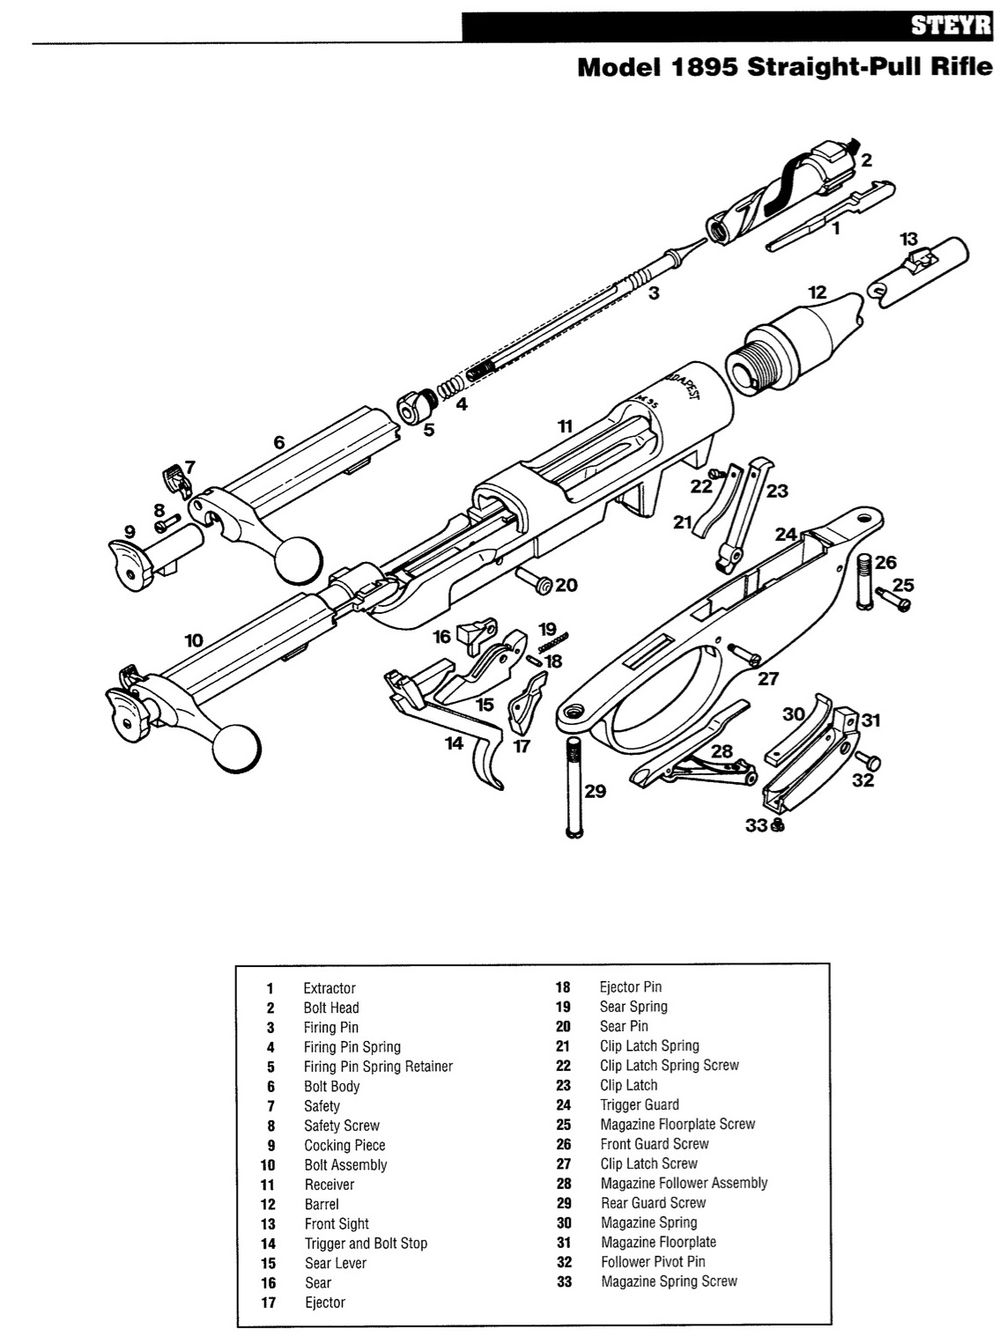 斯太爾-曼利夏M1895步槍結構圖